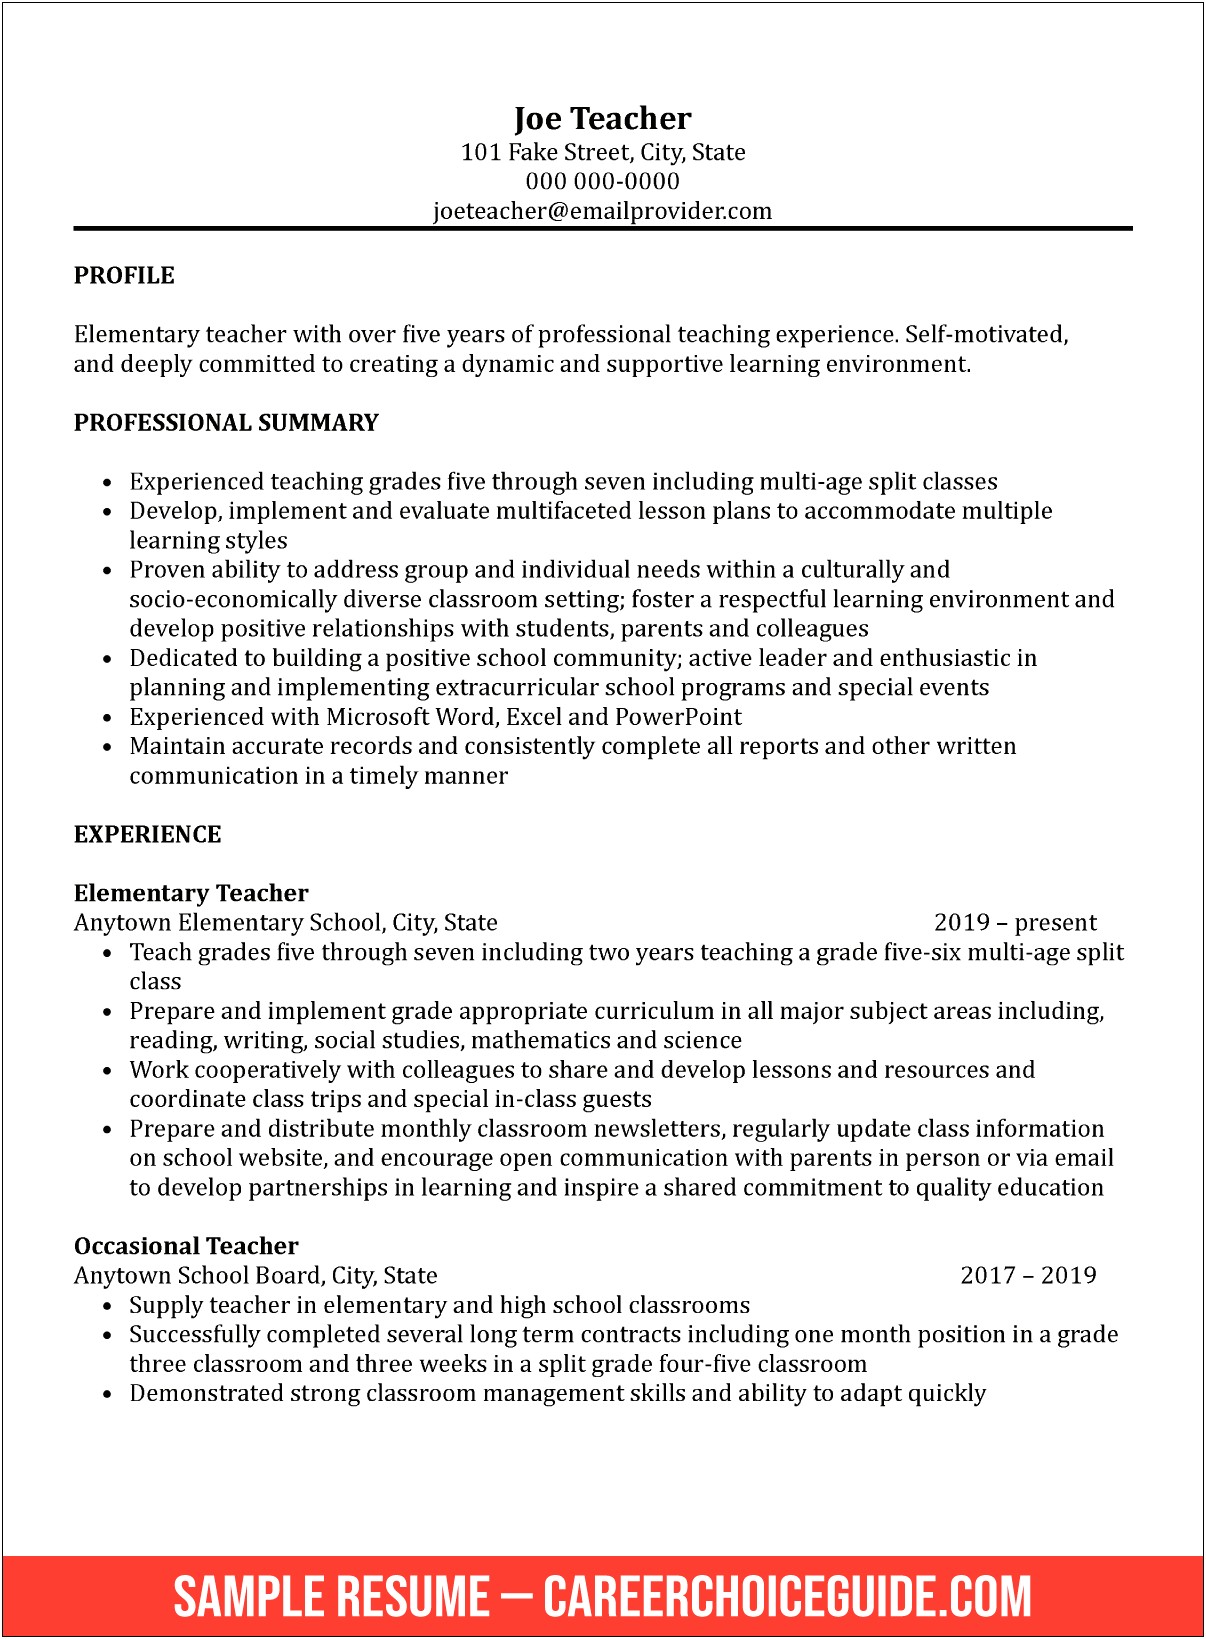 Examples Of Skills On Resume For Teacher